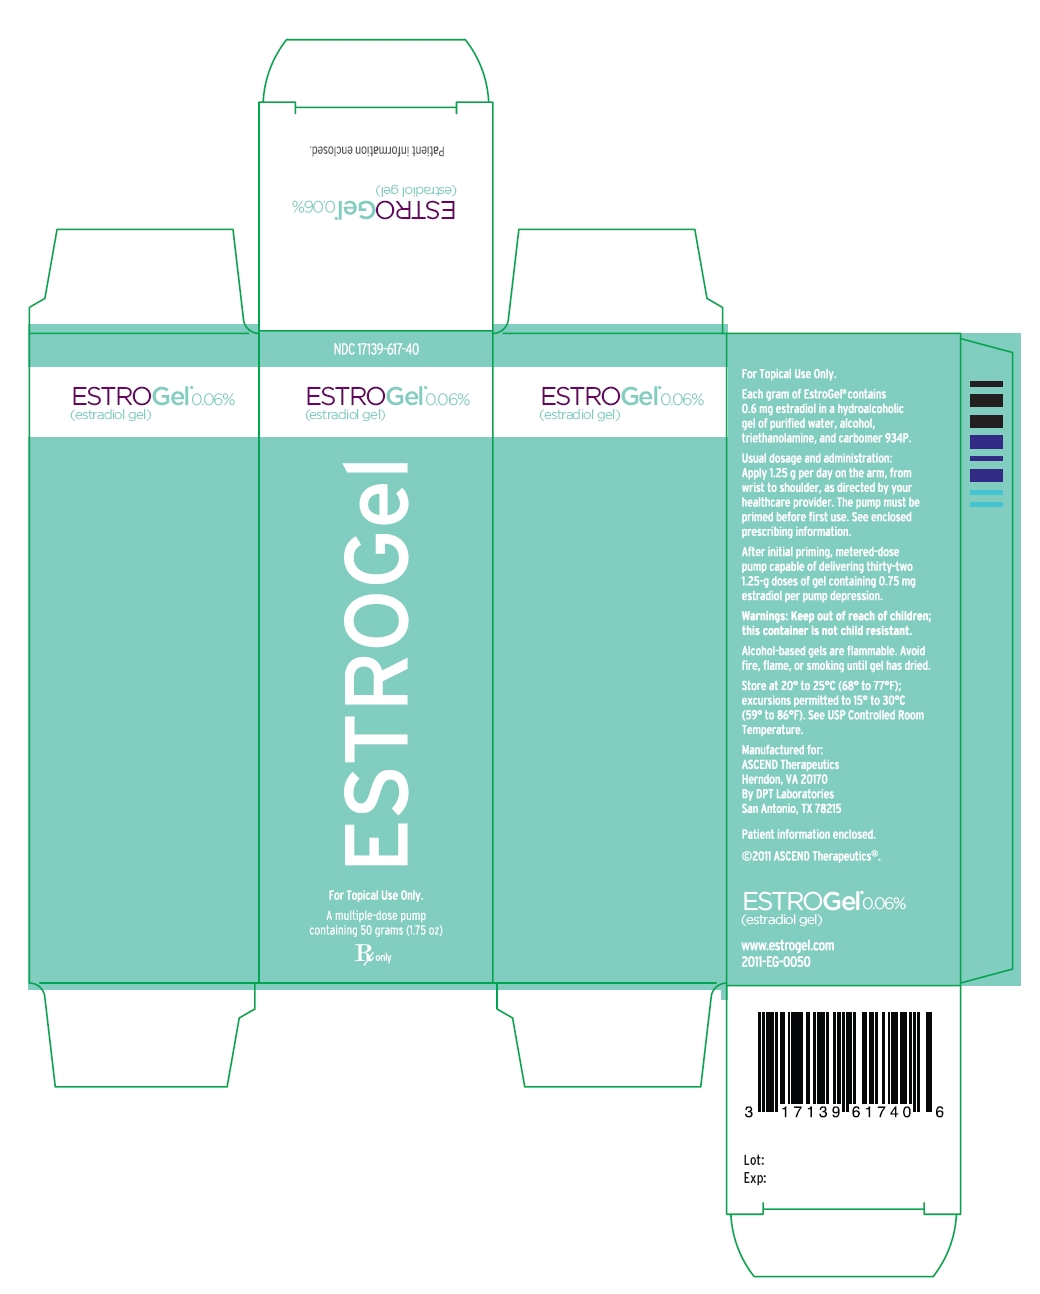 EstroGel® 0.06% (estradiol gel) carton